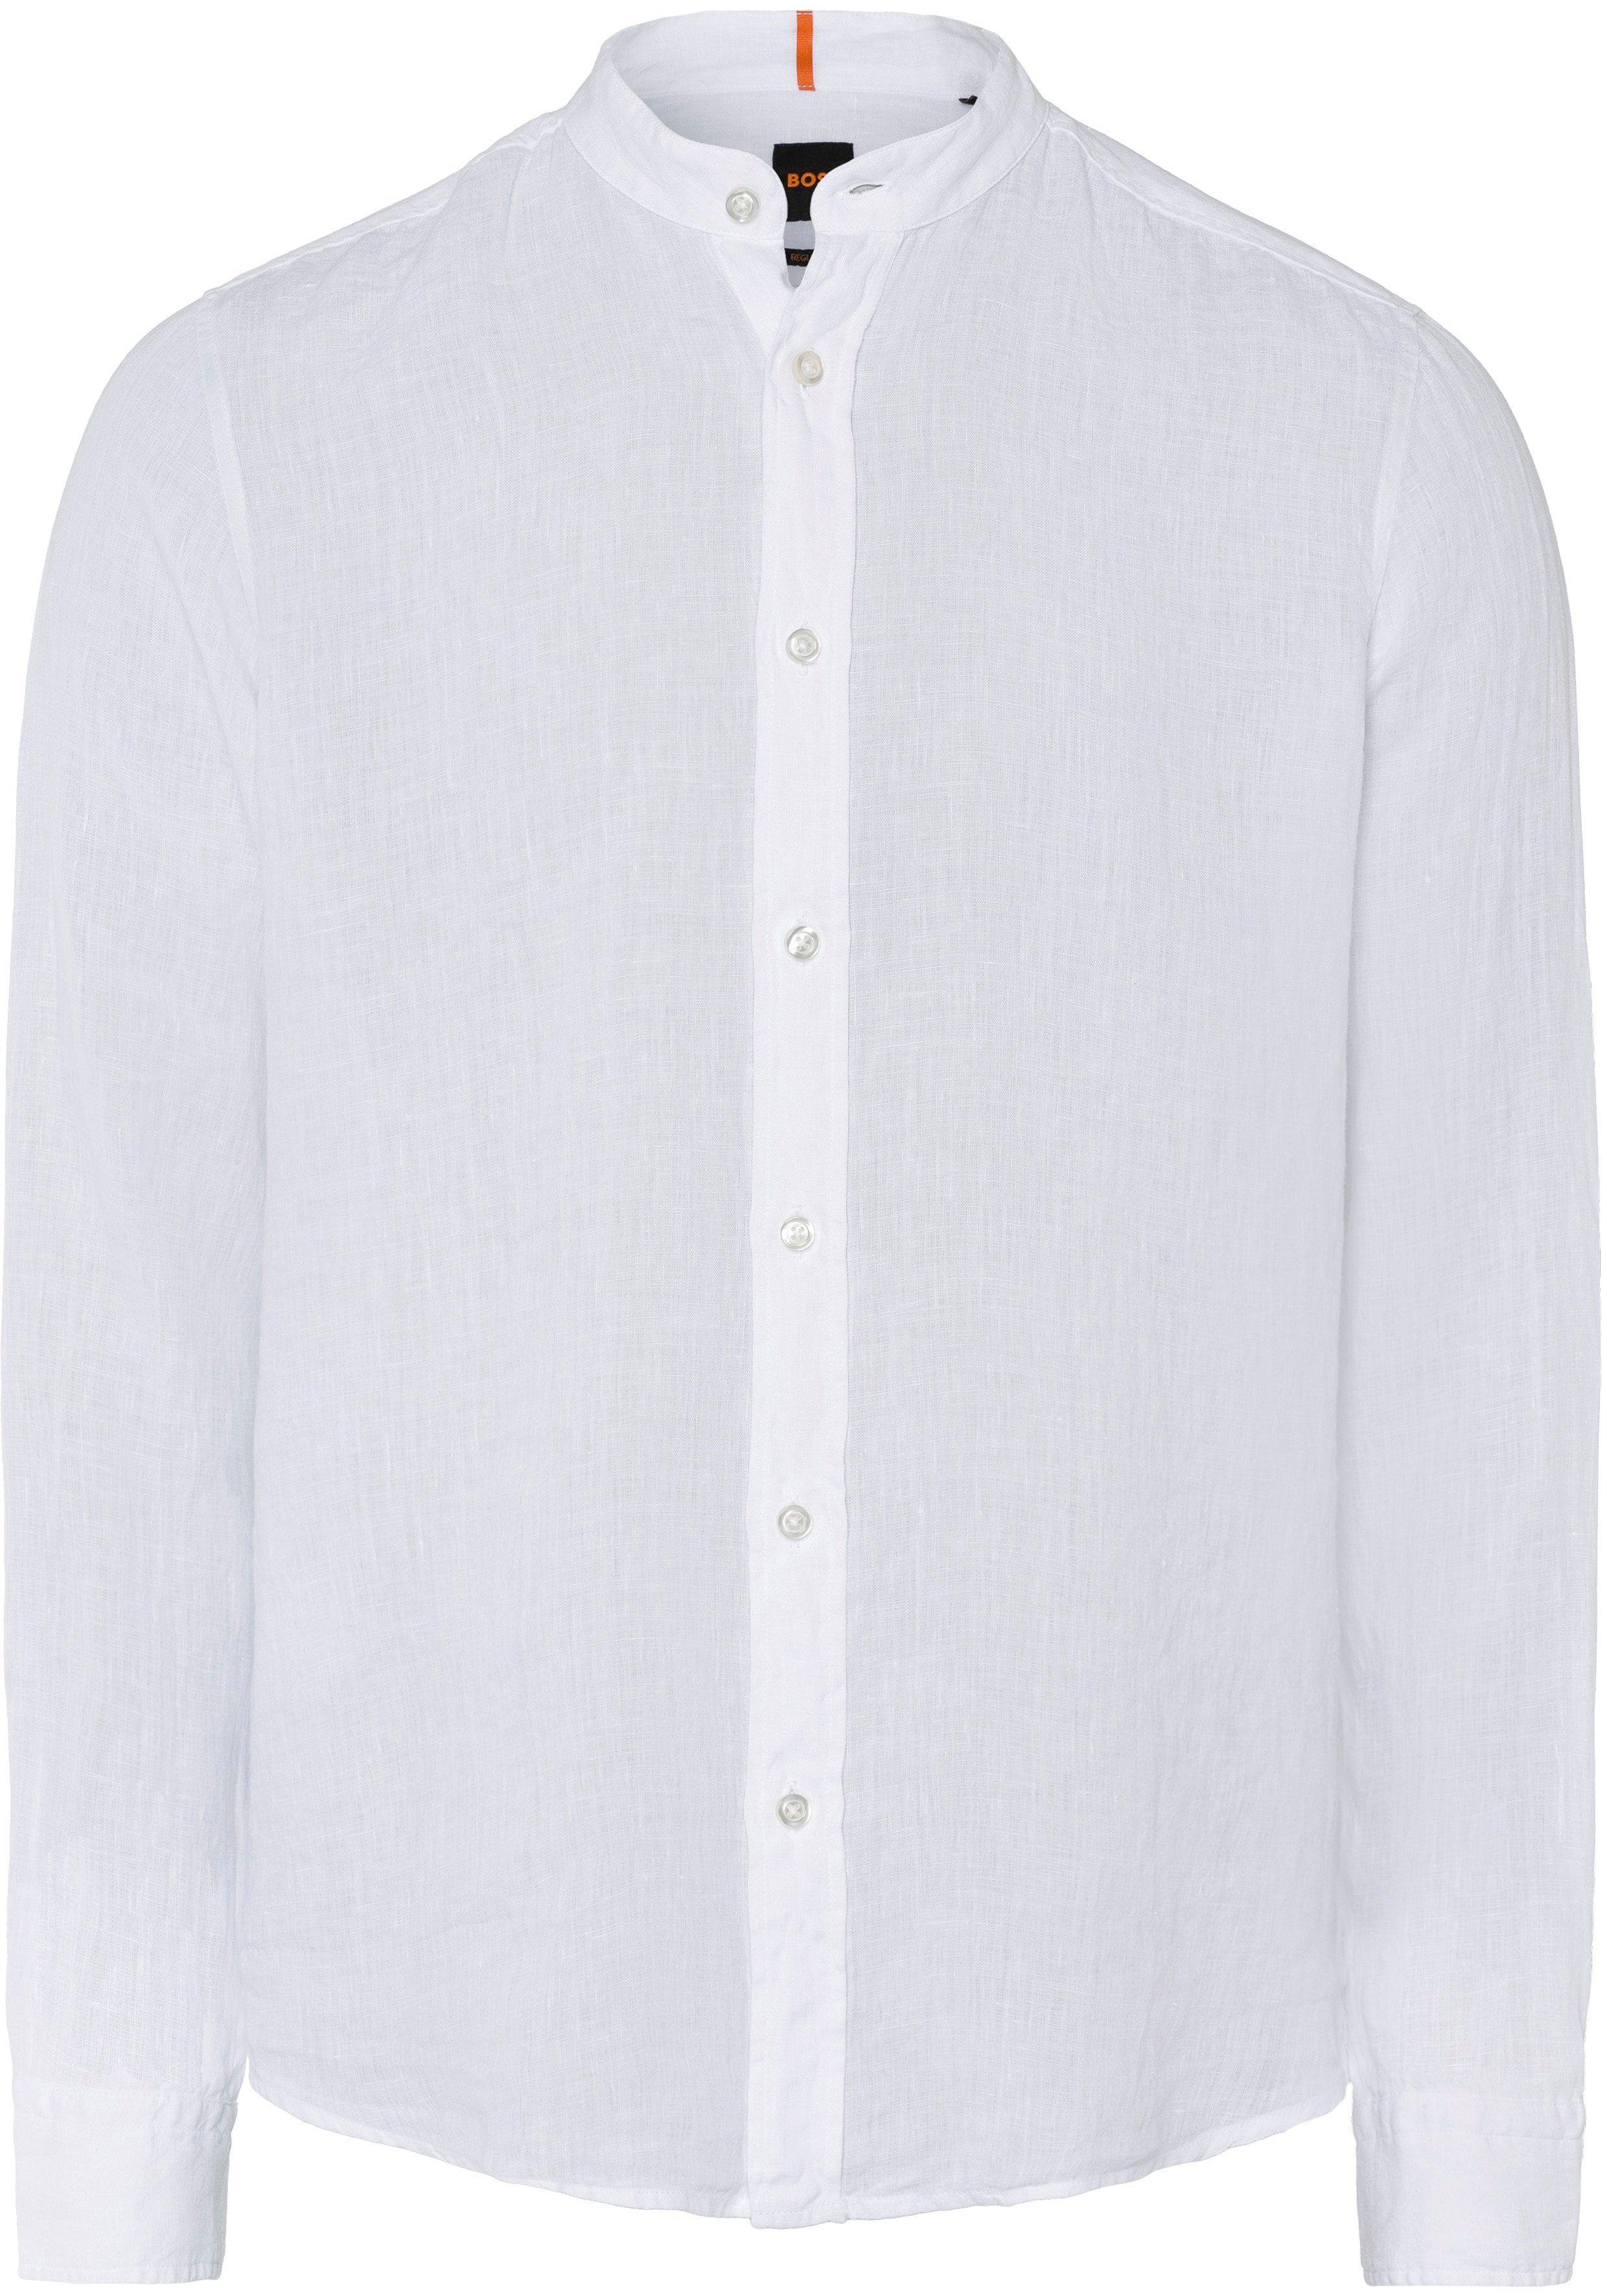 HUGO BOSS ORANGE Langarmshirt mit dezenter Label-Stickerei am Manschettenschlitz white100